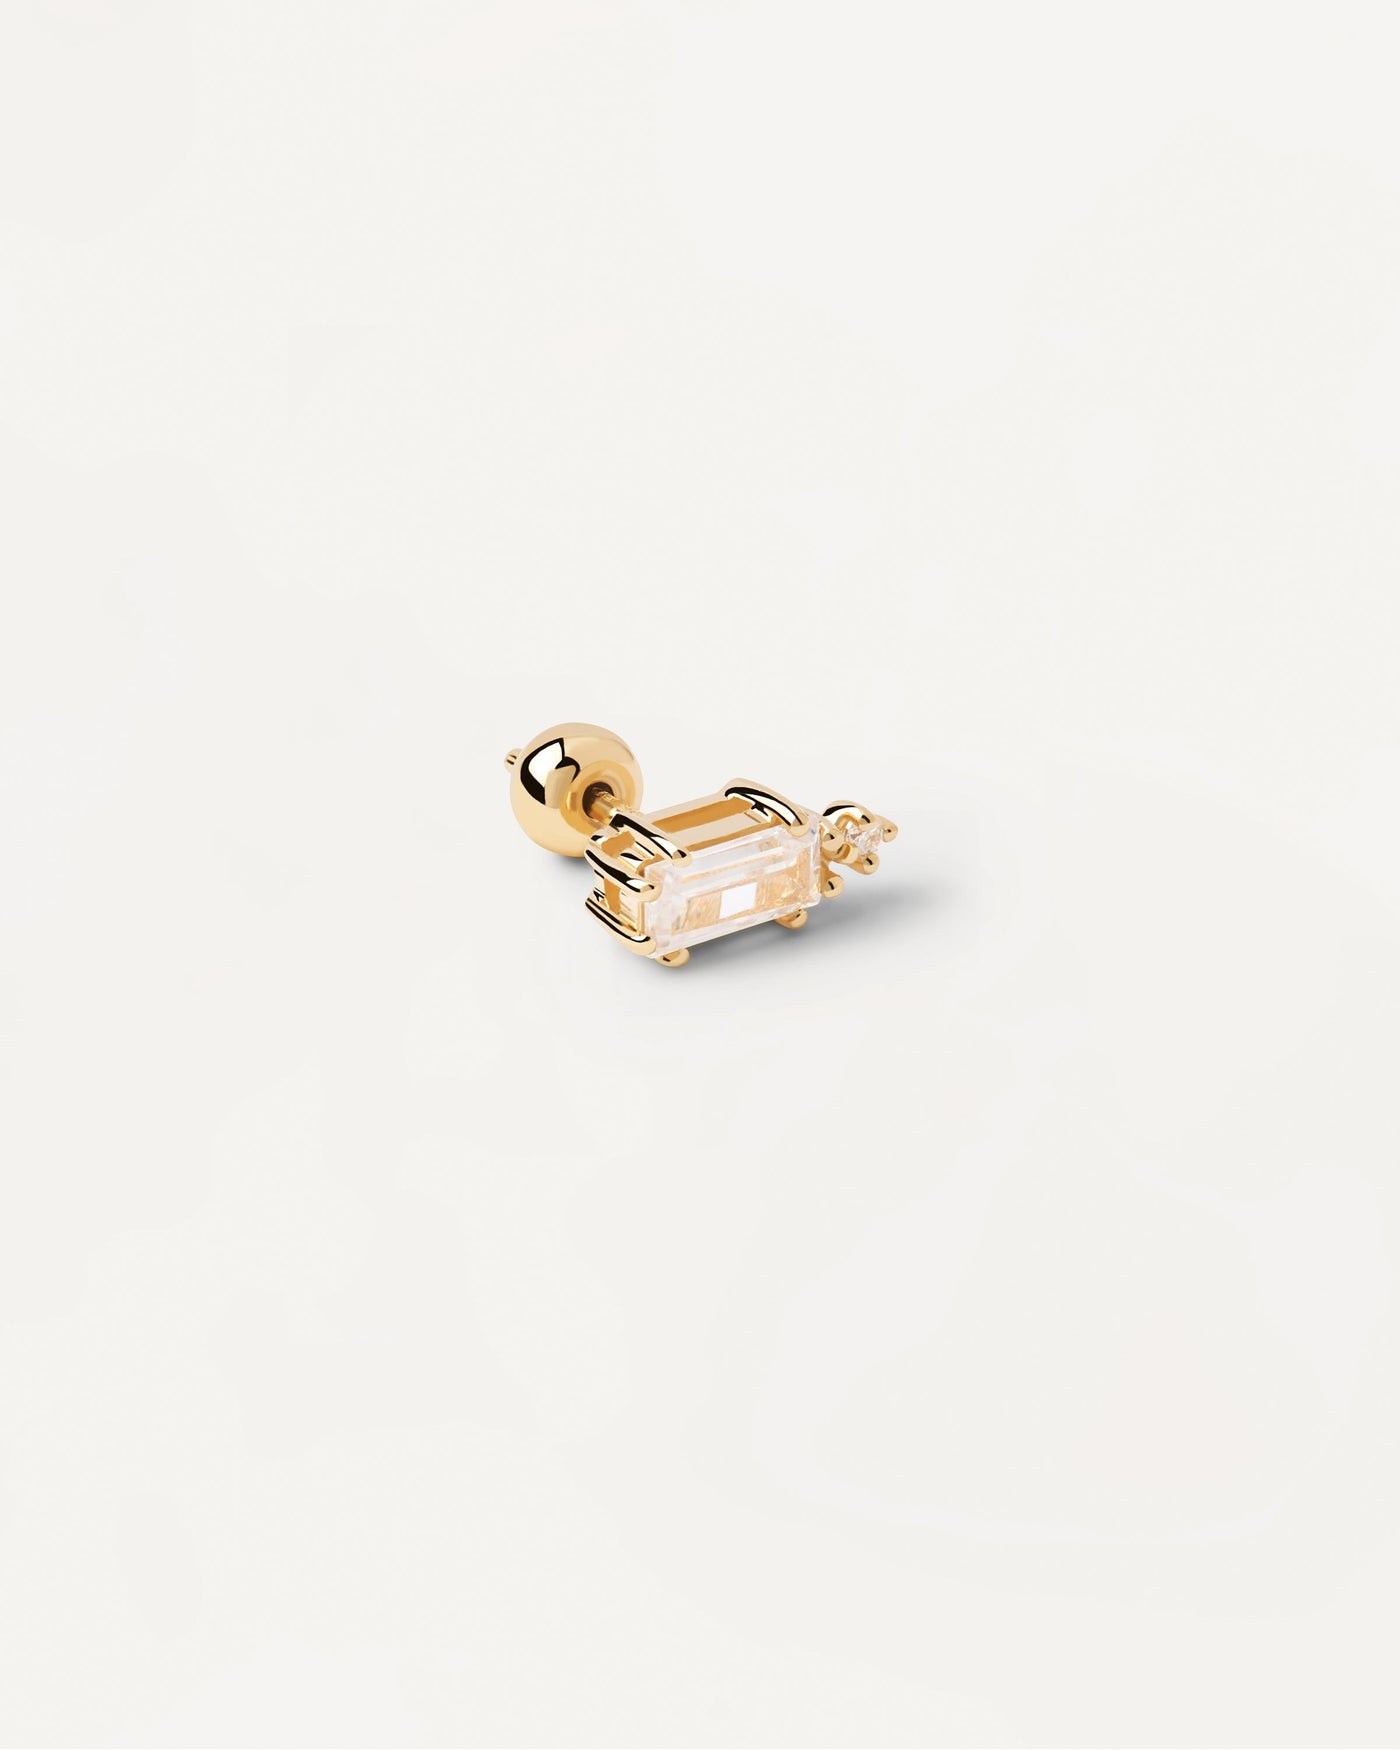 Bea Einzelner Ohrring. Vergoldeter Piercing-Ohrring mit weißem Kristall im Baguette-Schliff. Erhalten Sie die neuesten Produkte von PDPAOLA. Geben Sie Ihre Bestellung sicher auf und erhalten Sie diesen Bestseller.